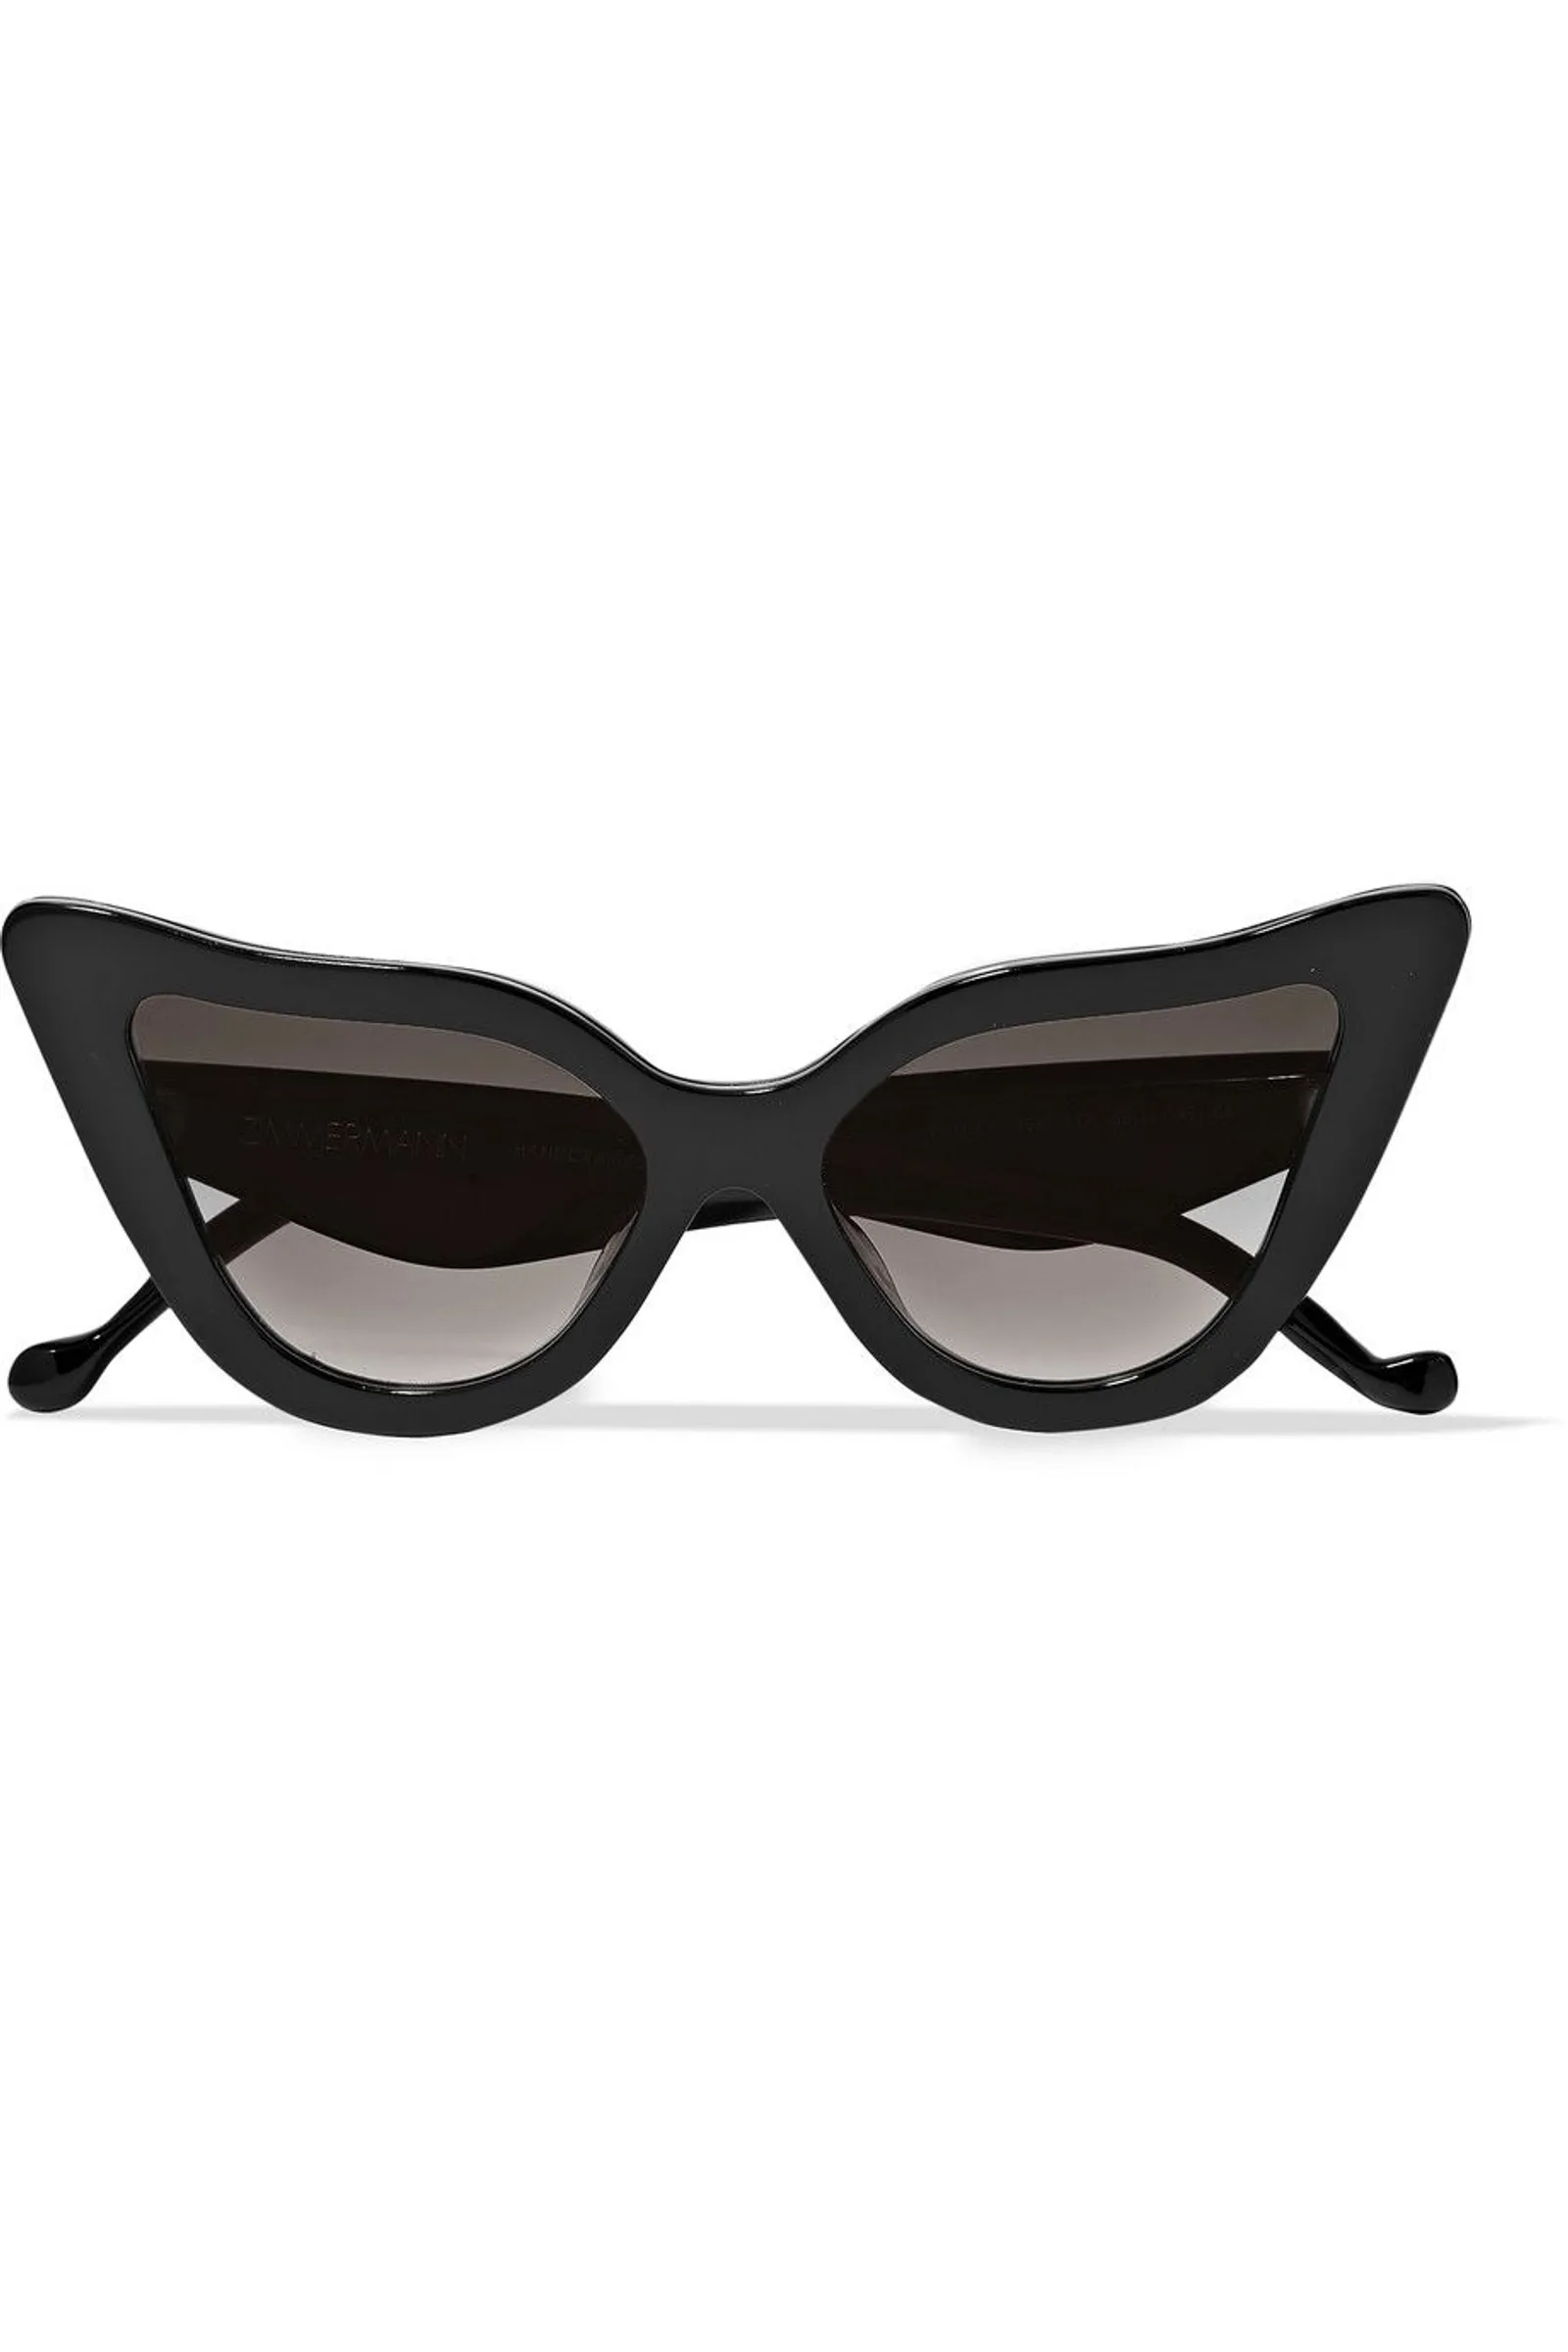 #PopbelaOOTD: Invest Kacamata Oversized Yuk!